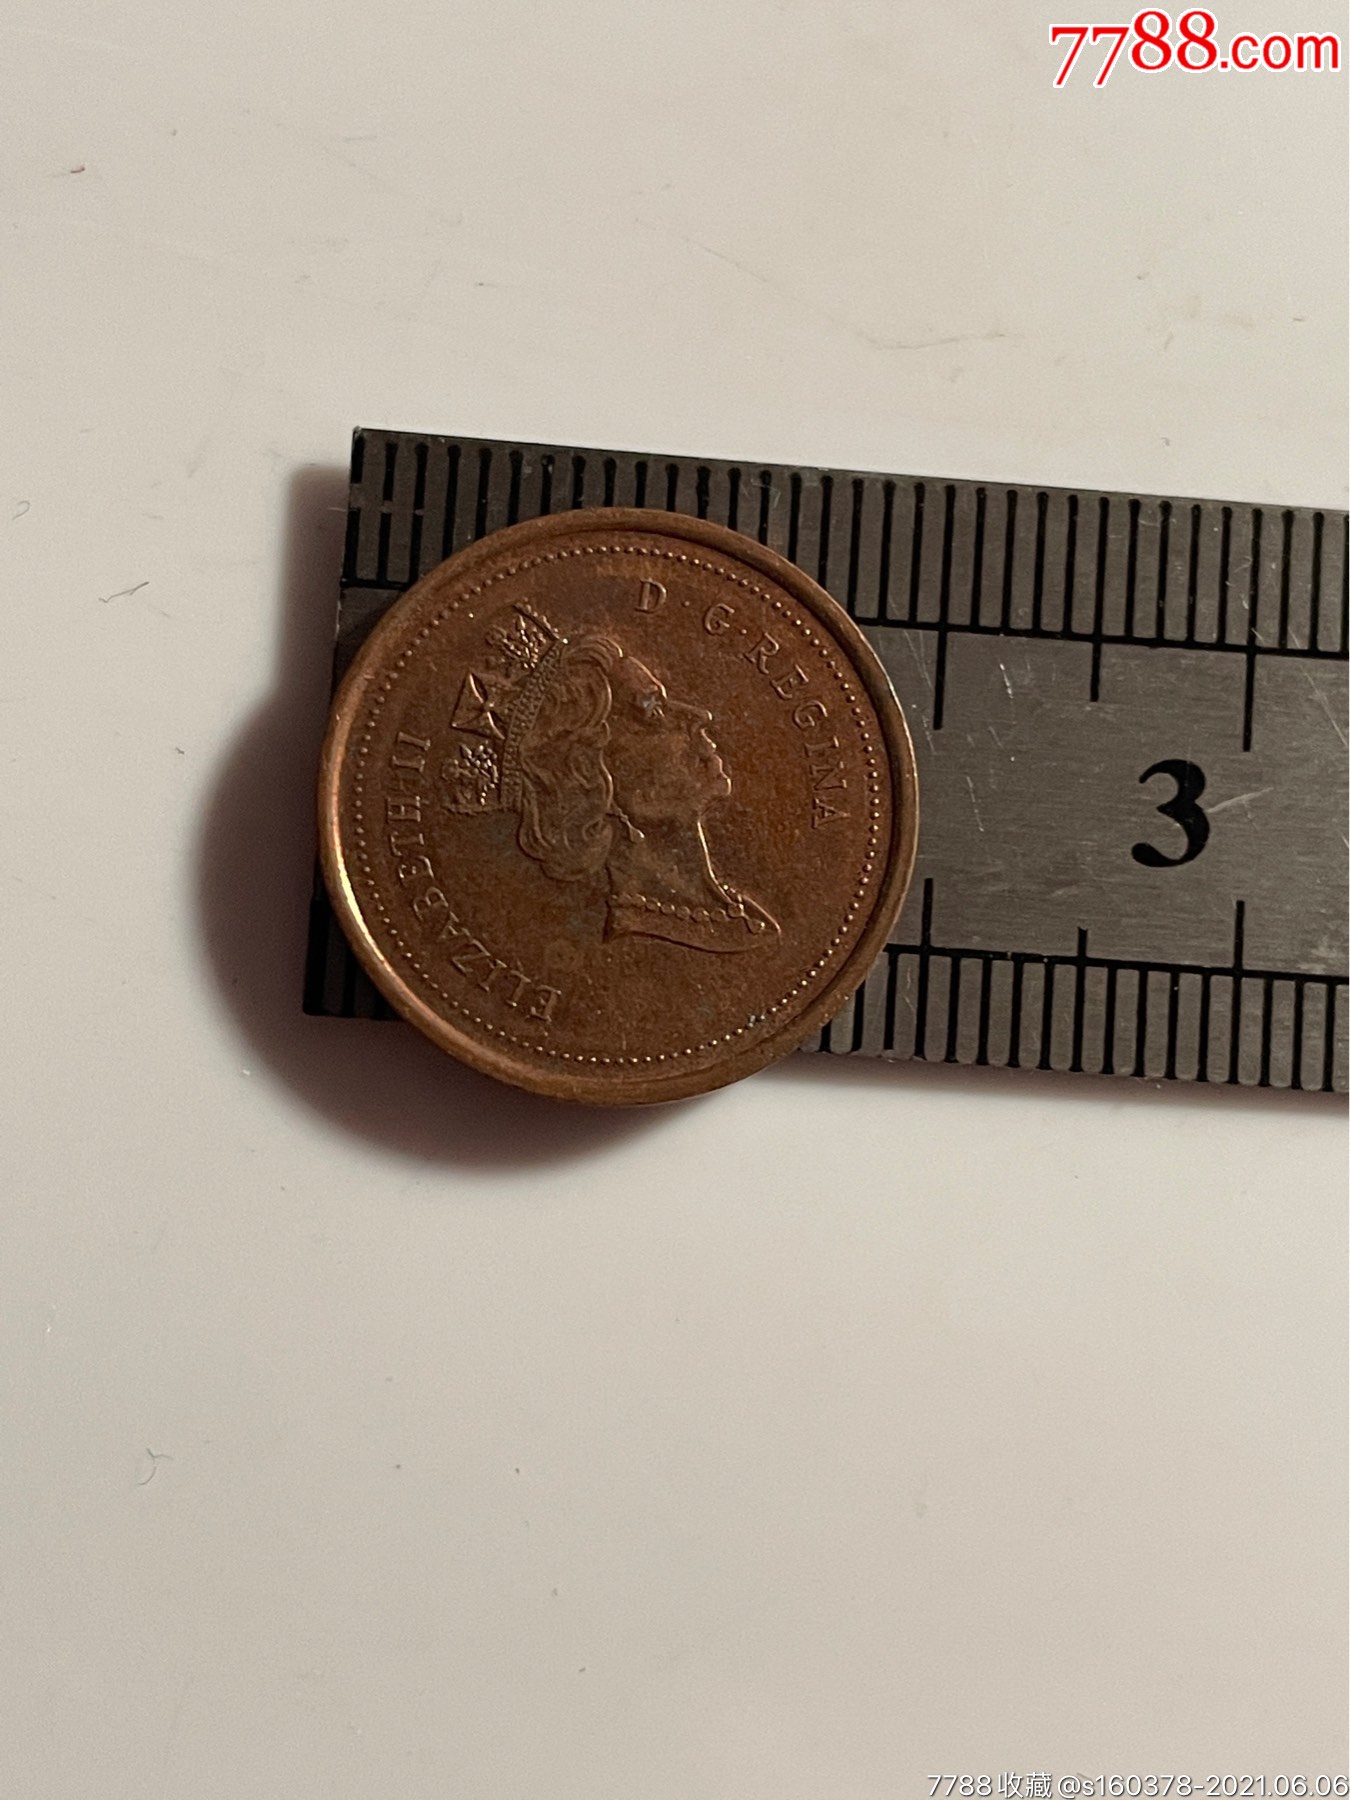 1999年加拿大枫叶1分铜币外国硬币